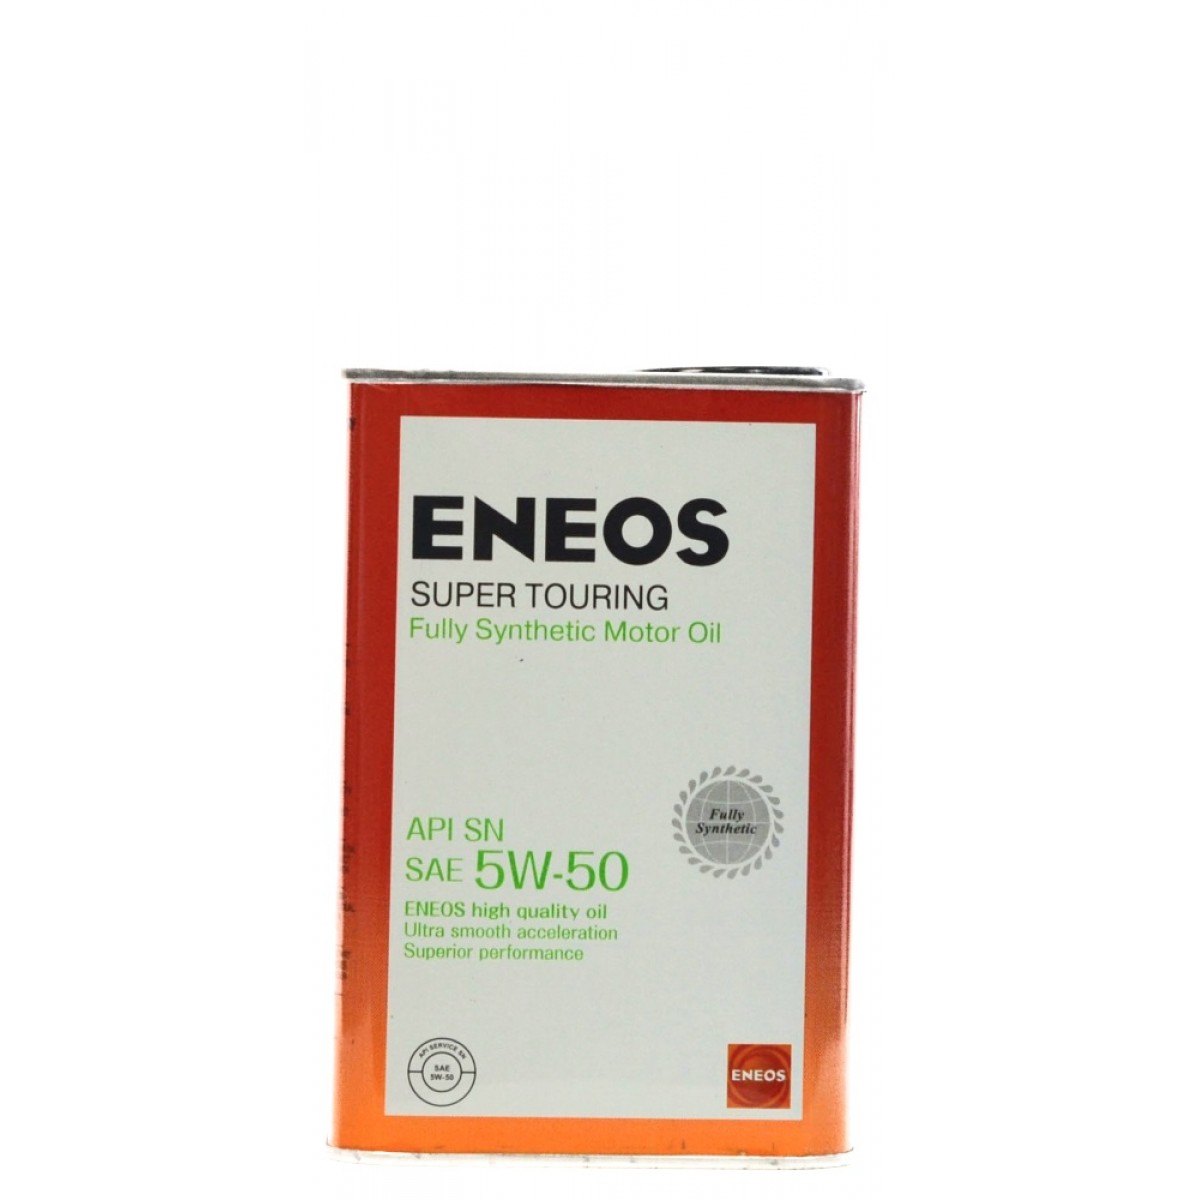 Eneos 5w30 touring. ENEOS Premium Touring SN 5w30 4л. ENEOS super Touring 100% Synt. SN 5w-50 4л. ENEOS Premium 5w-30. ENEOS Premium Touring 5w-30.